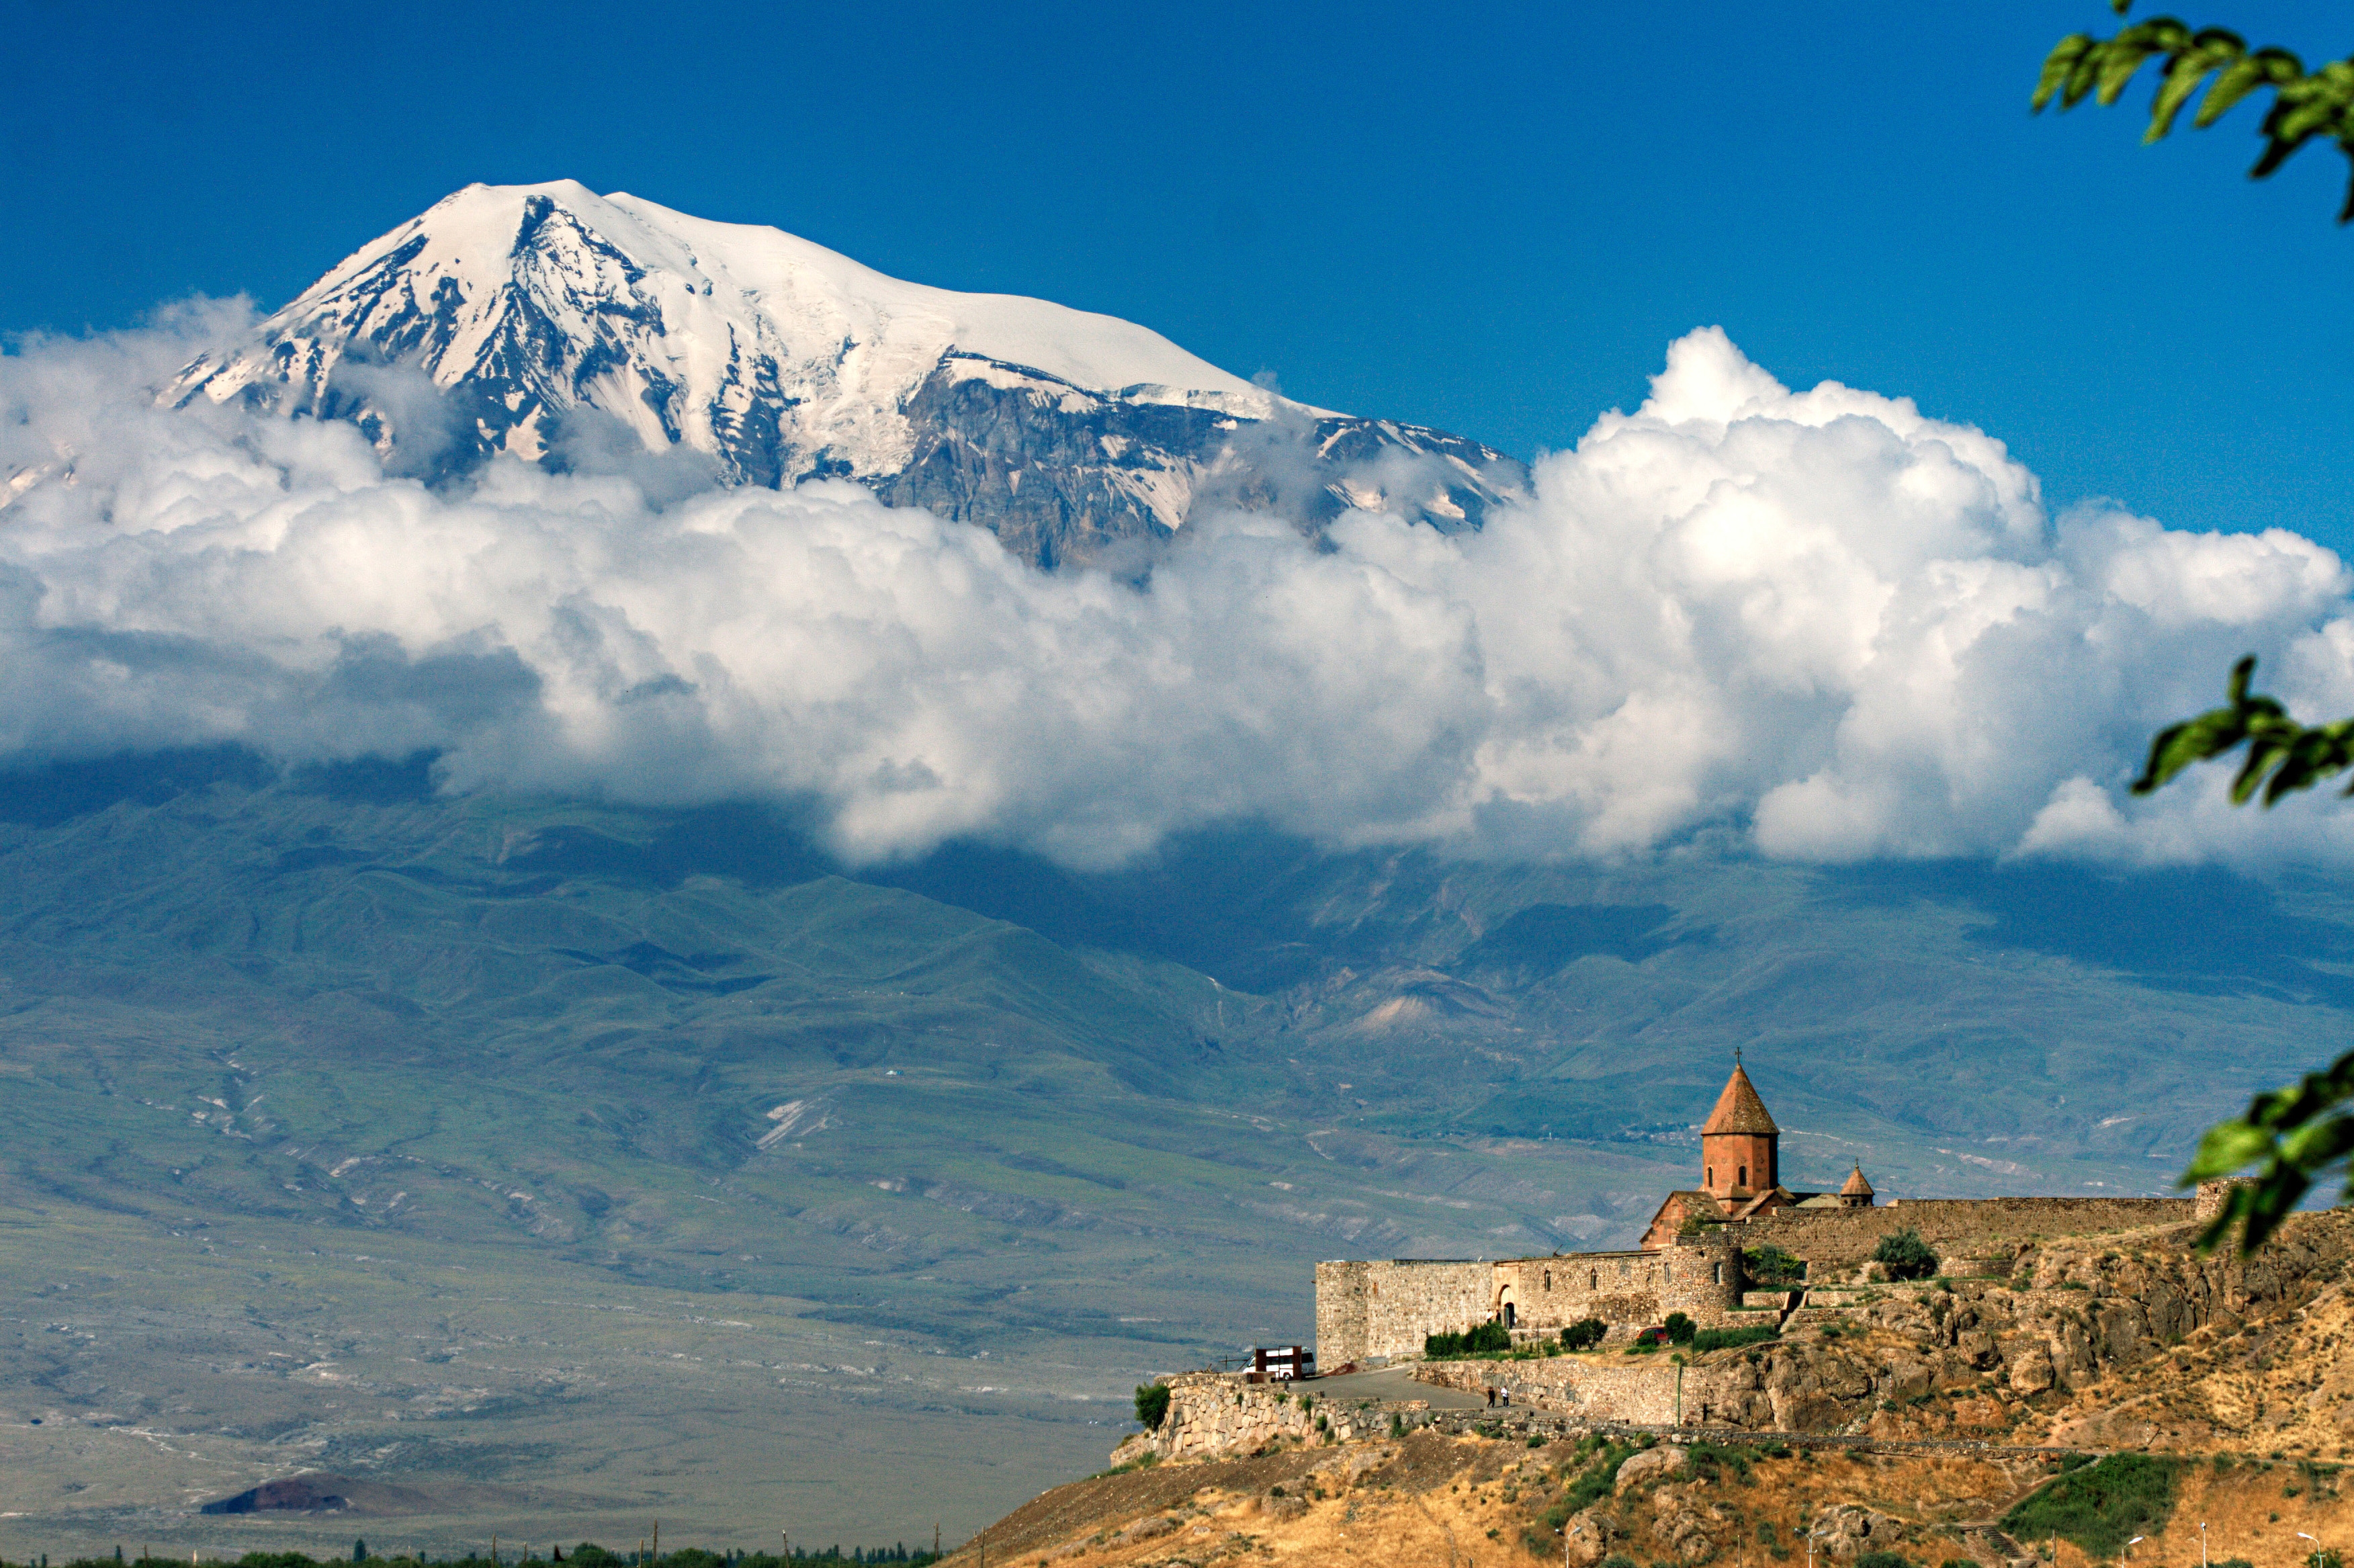 Скачать обои Армения на телефон бесплатно